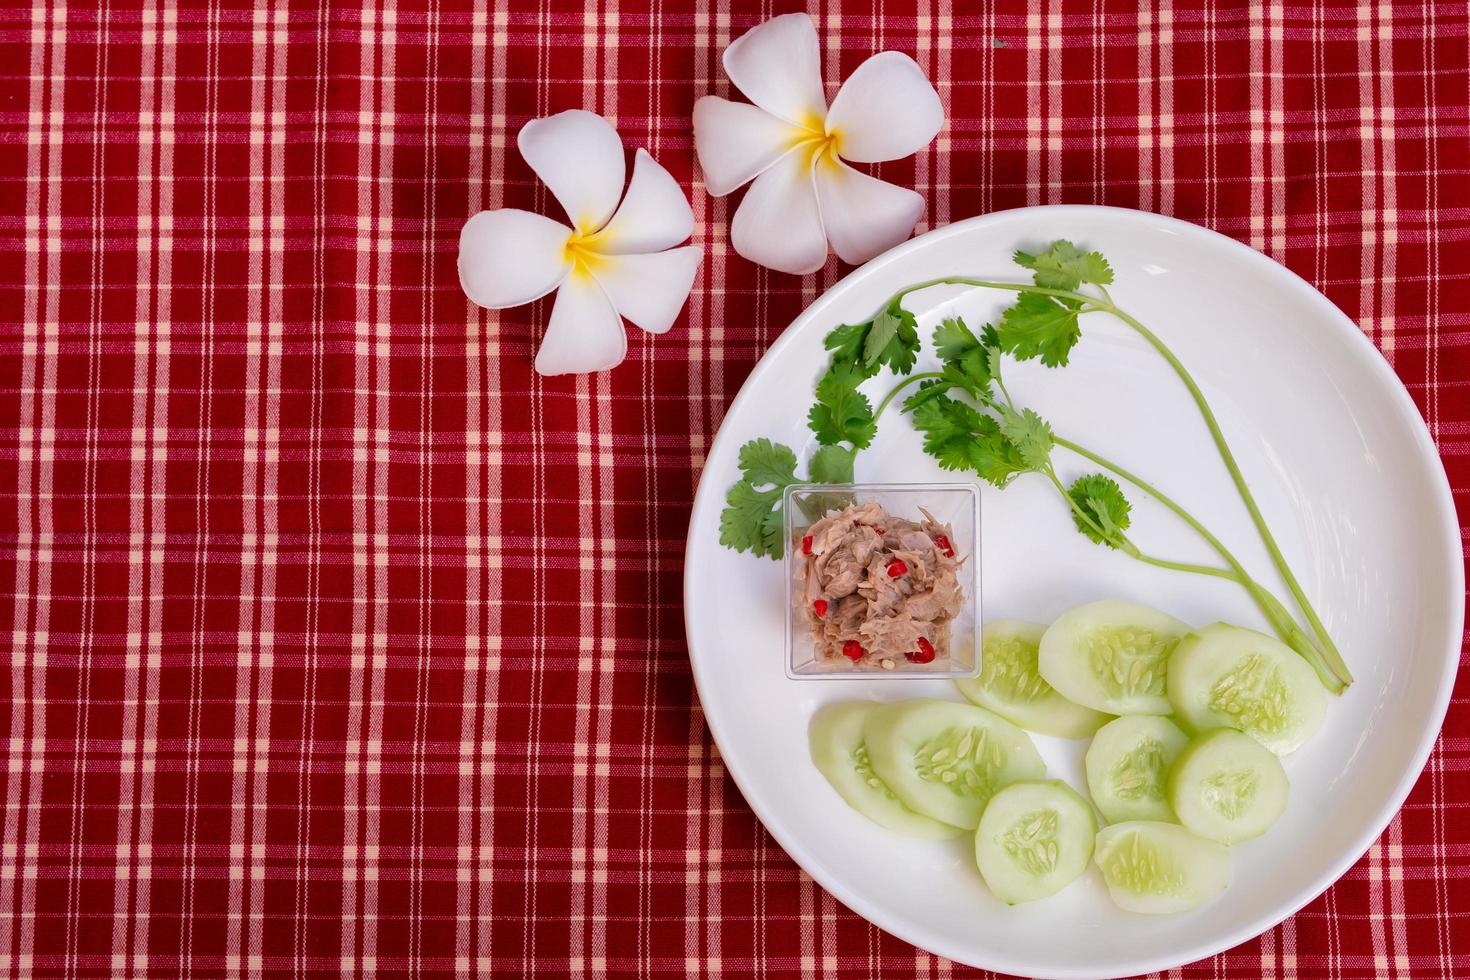 La ensalada de atún yum es pequeña en un plato blanco, adornada con melones y cilantro verde fresco. Fondo de tela escocesa roja y blanca. estilo vintage. decorado con flores de frangipani. foto